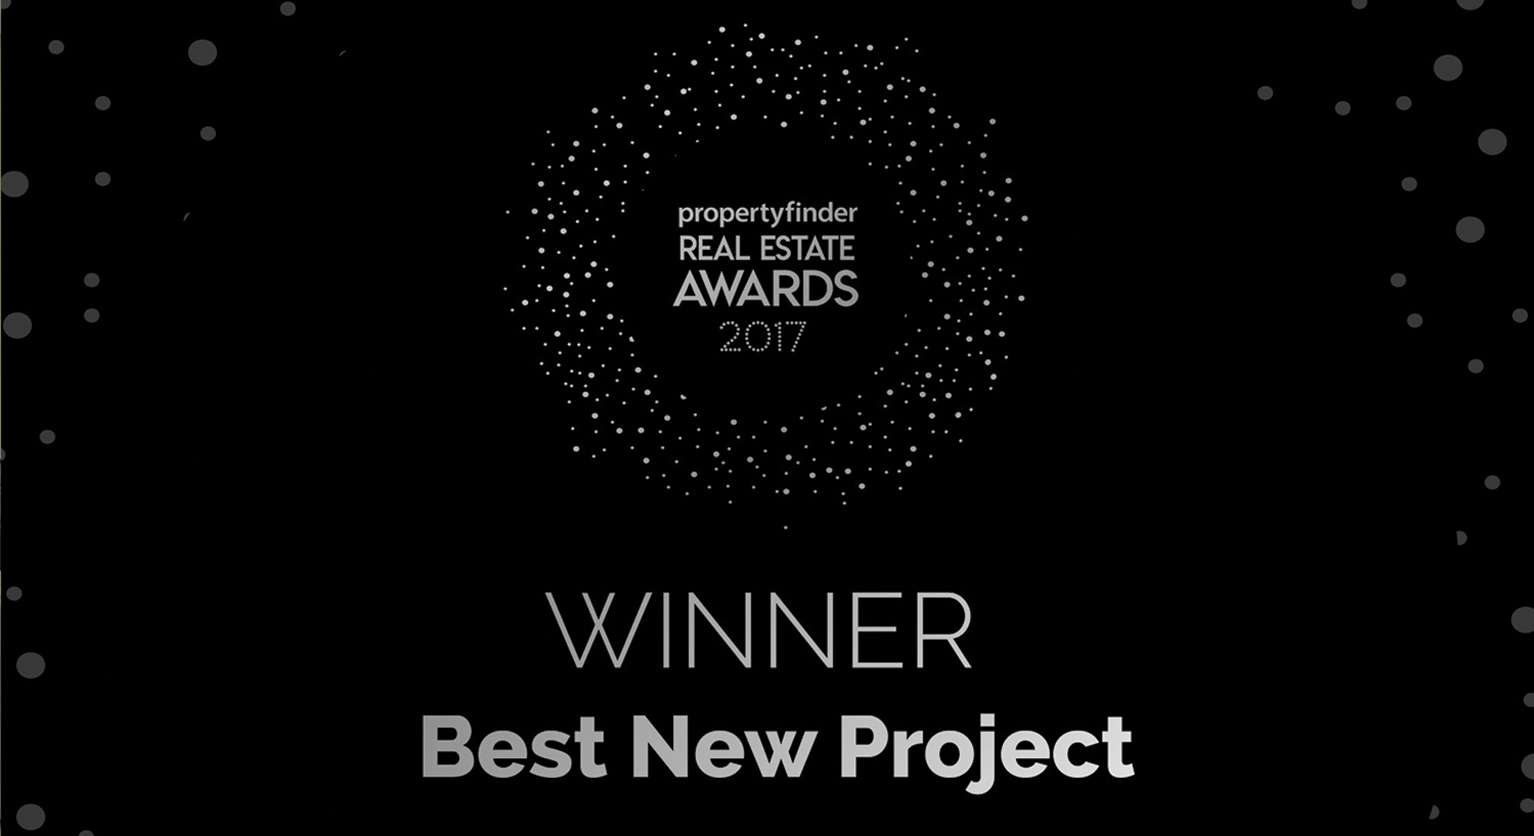 Propertyfinder-best-new-project-winner